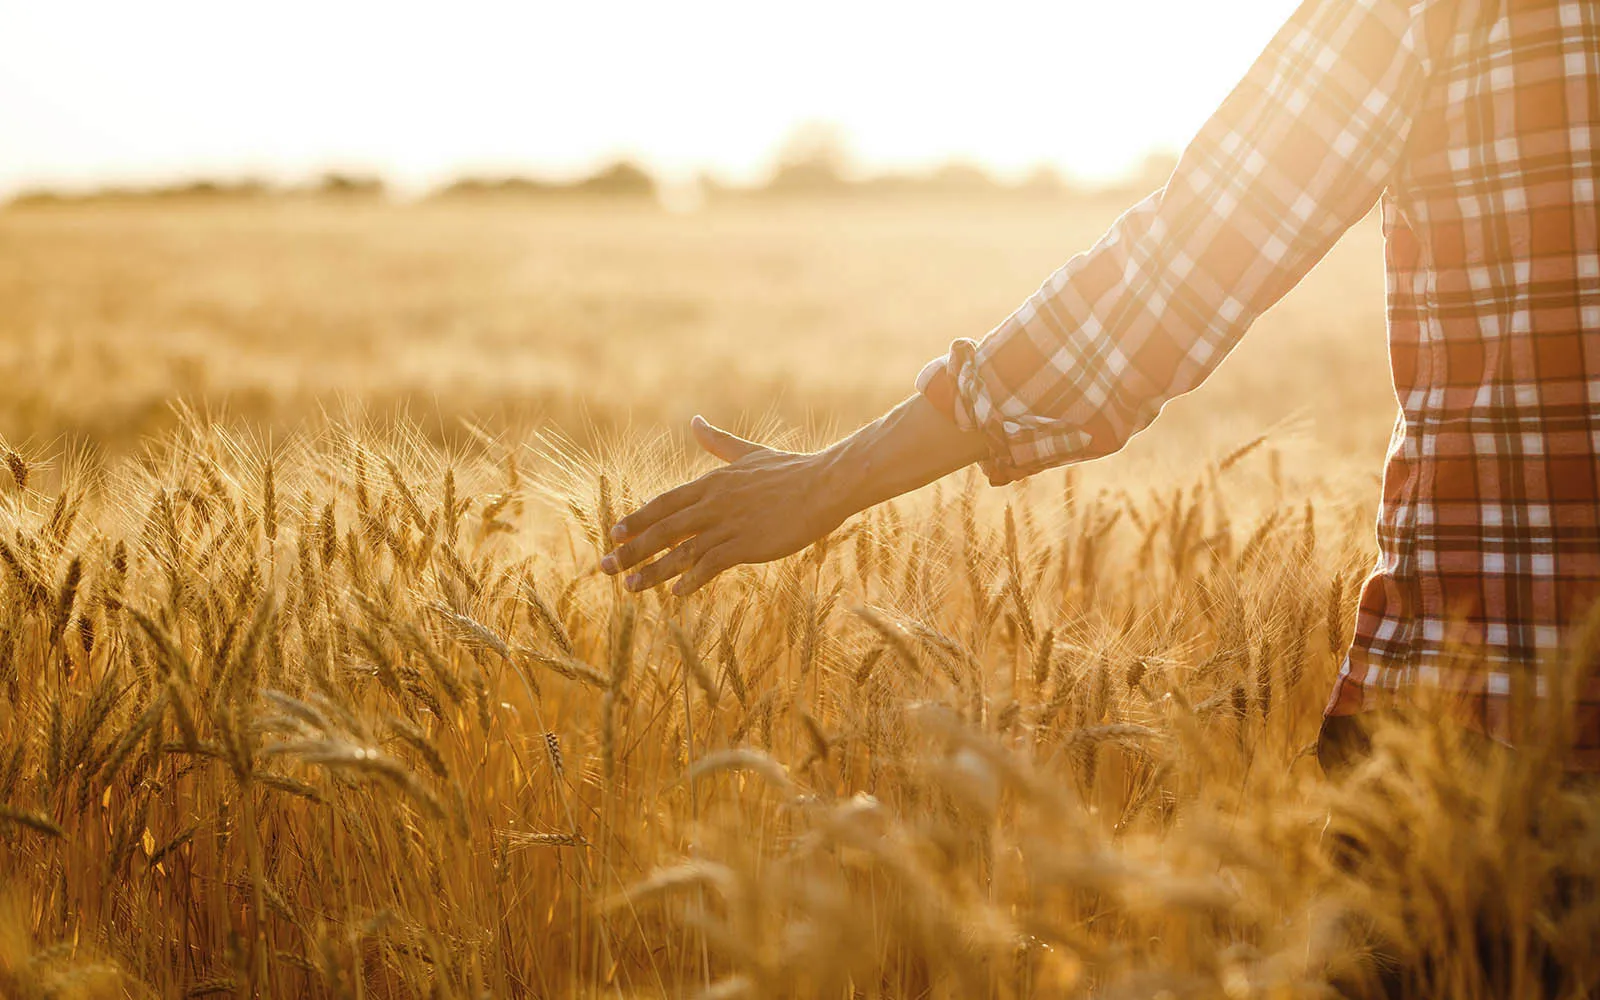 Gros plan sur la main d'une personne marchant dans un champ de blé